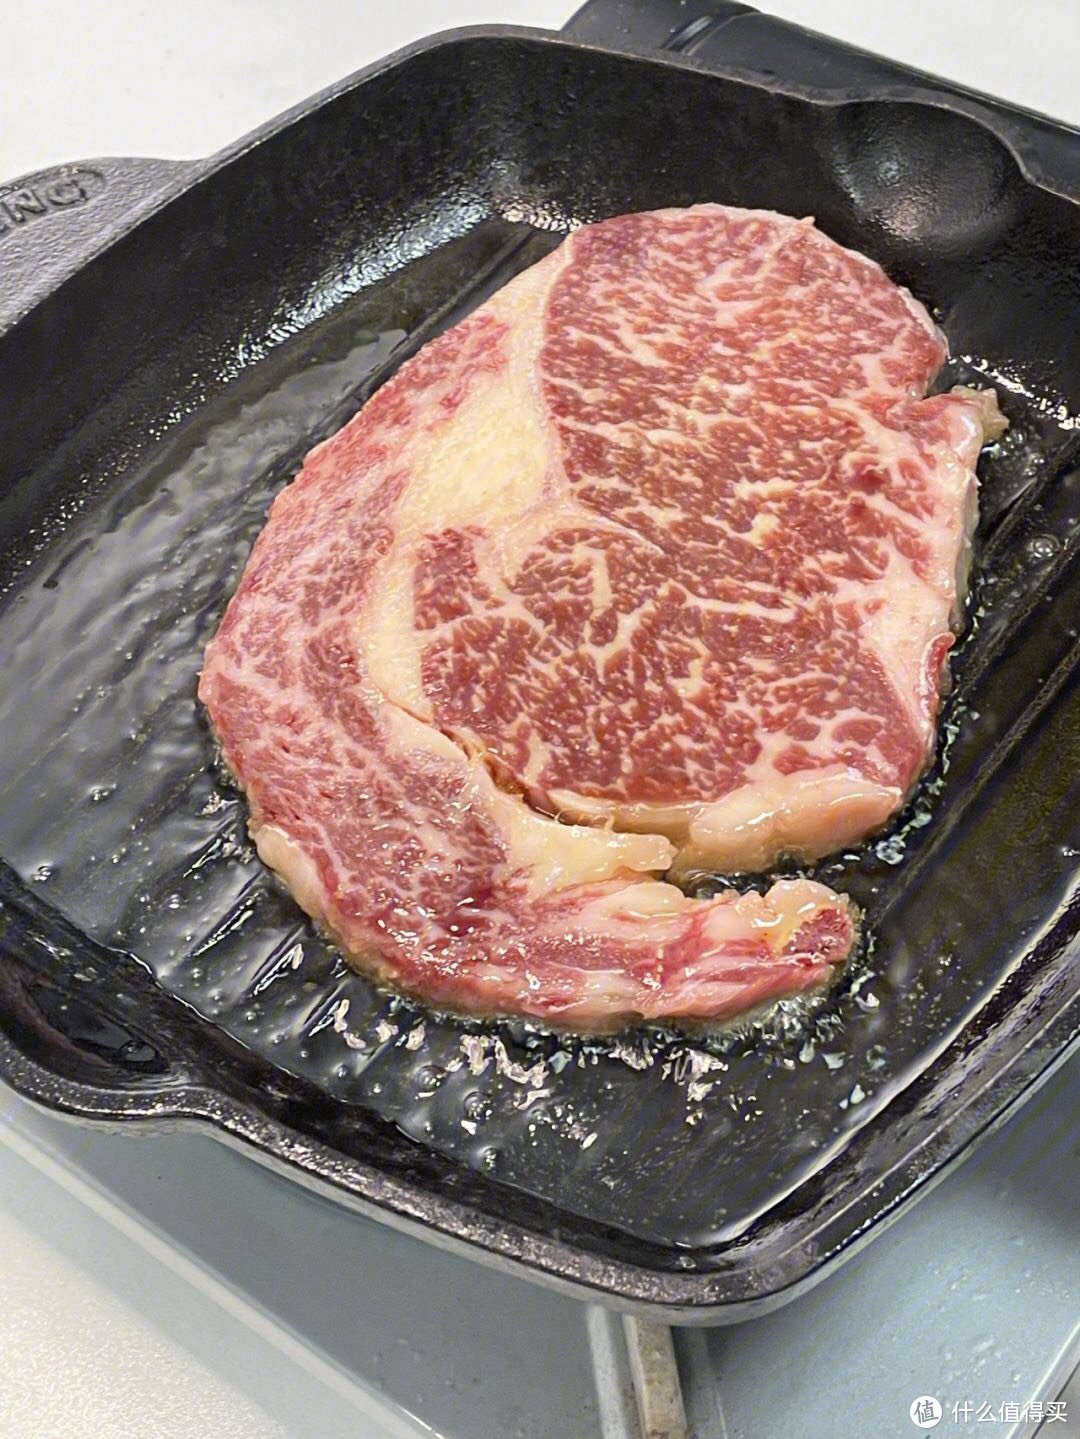 「眼肉牛排」:顶级牛肉中的奢华享受